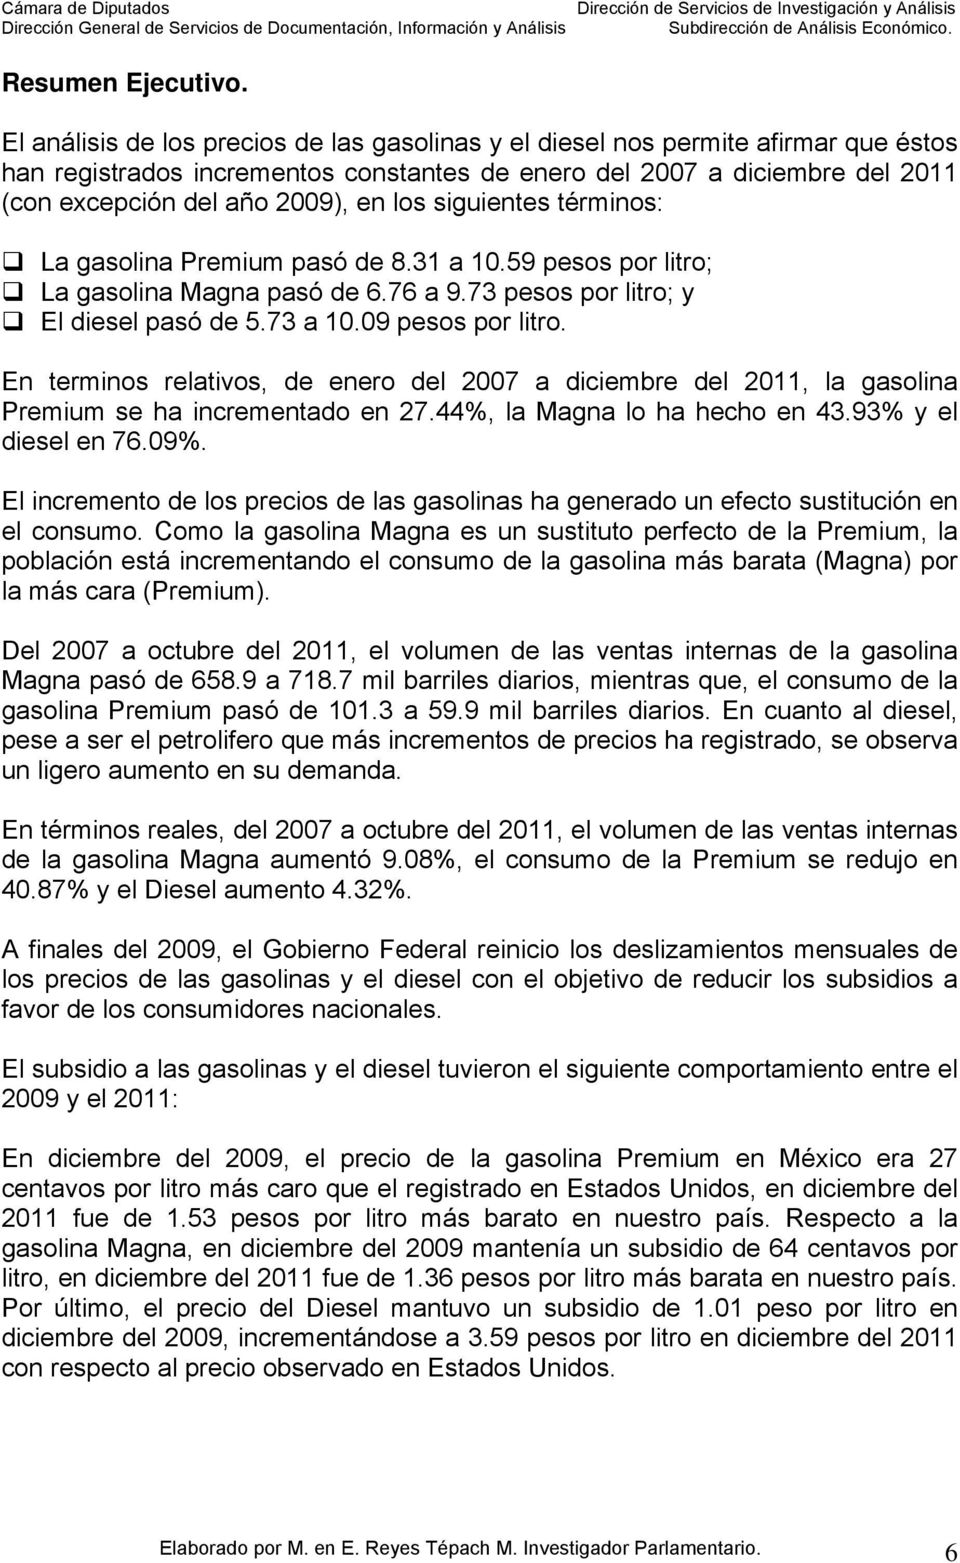 los siguientes términos: La gasolina Premium pasó de 8.31 a 10.59 pesos por litro; La gasolina Magna pasó de 6.76 a 9.73 pesos por litro; y El diesel pasó de 5.73 a 10.09 pesos por litro.